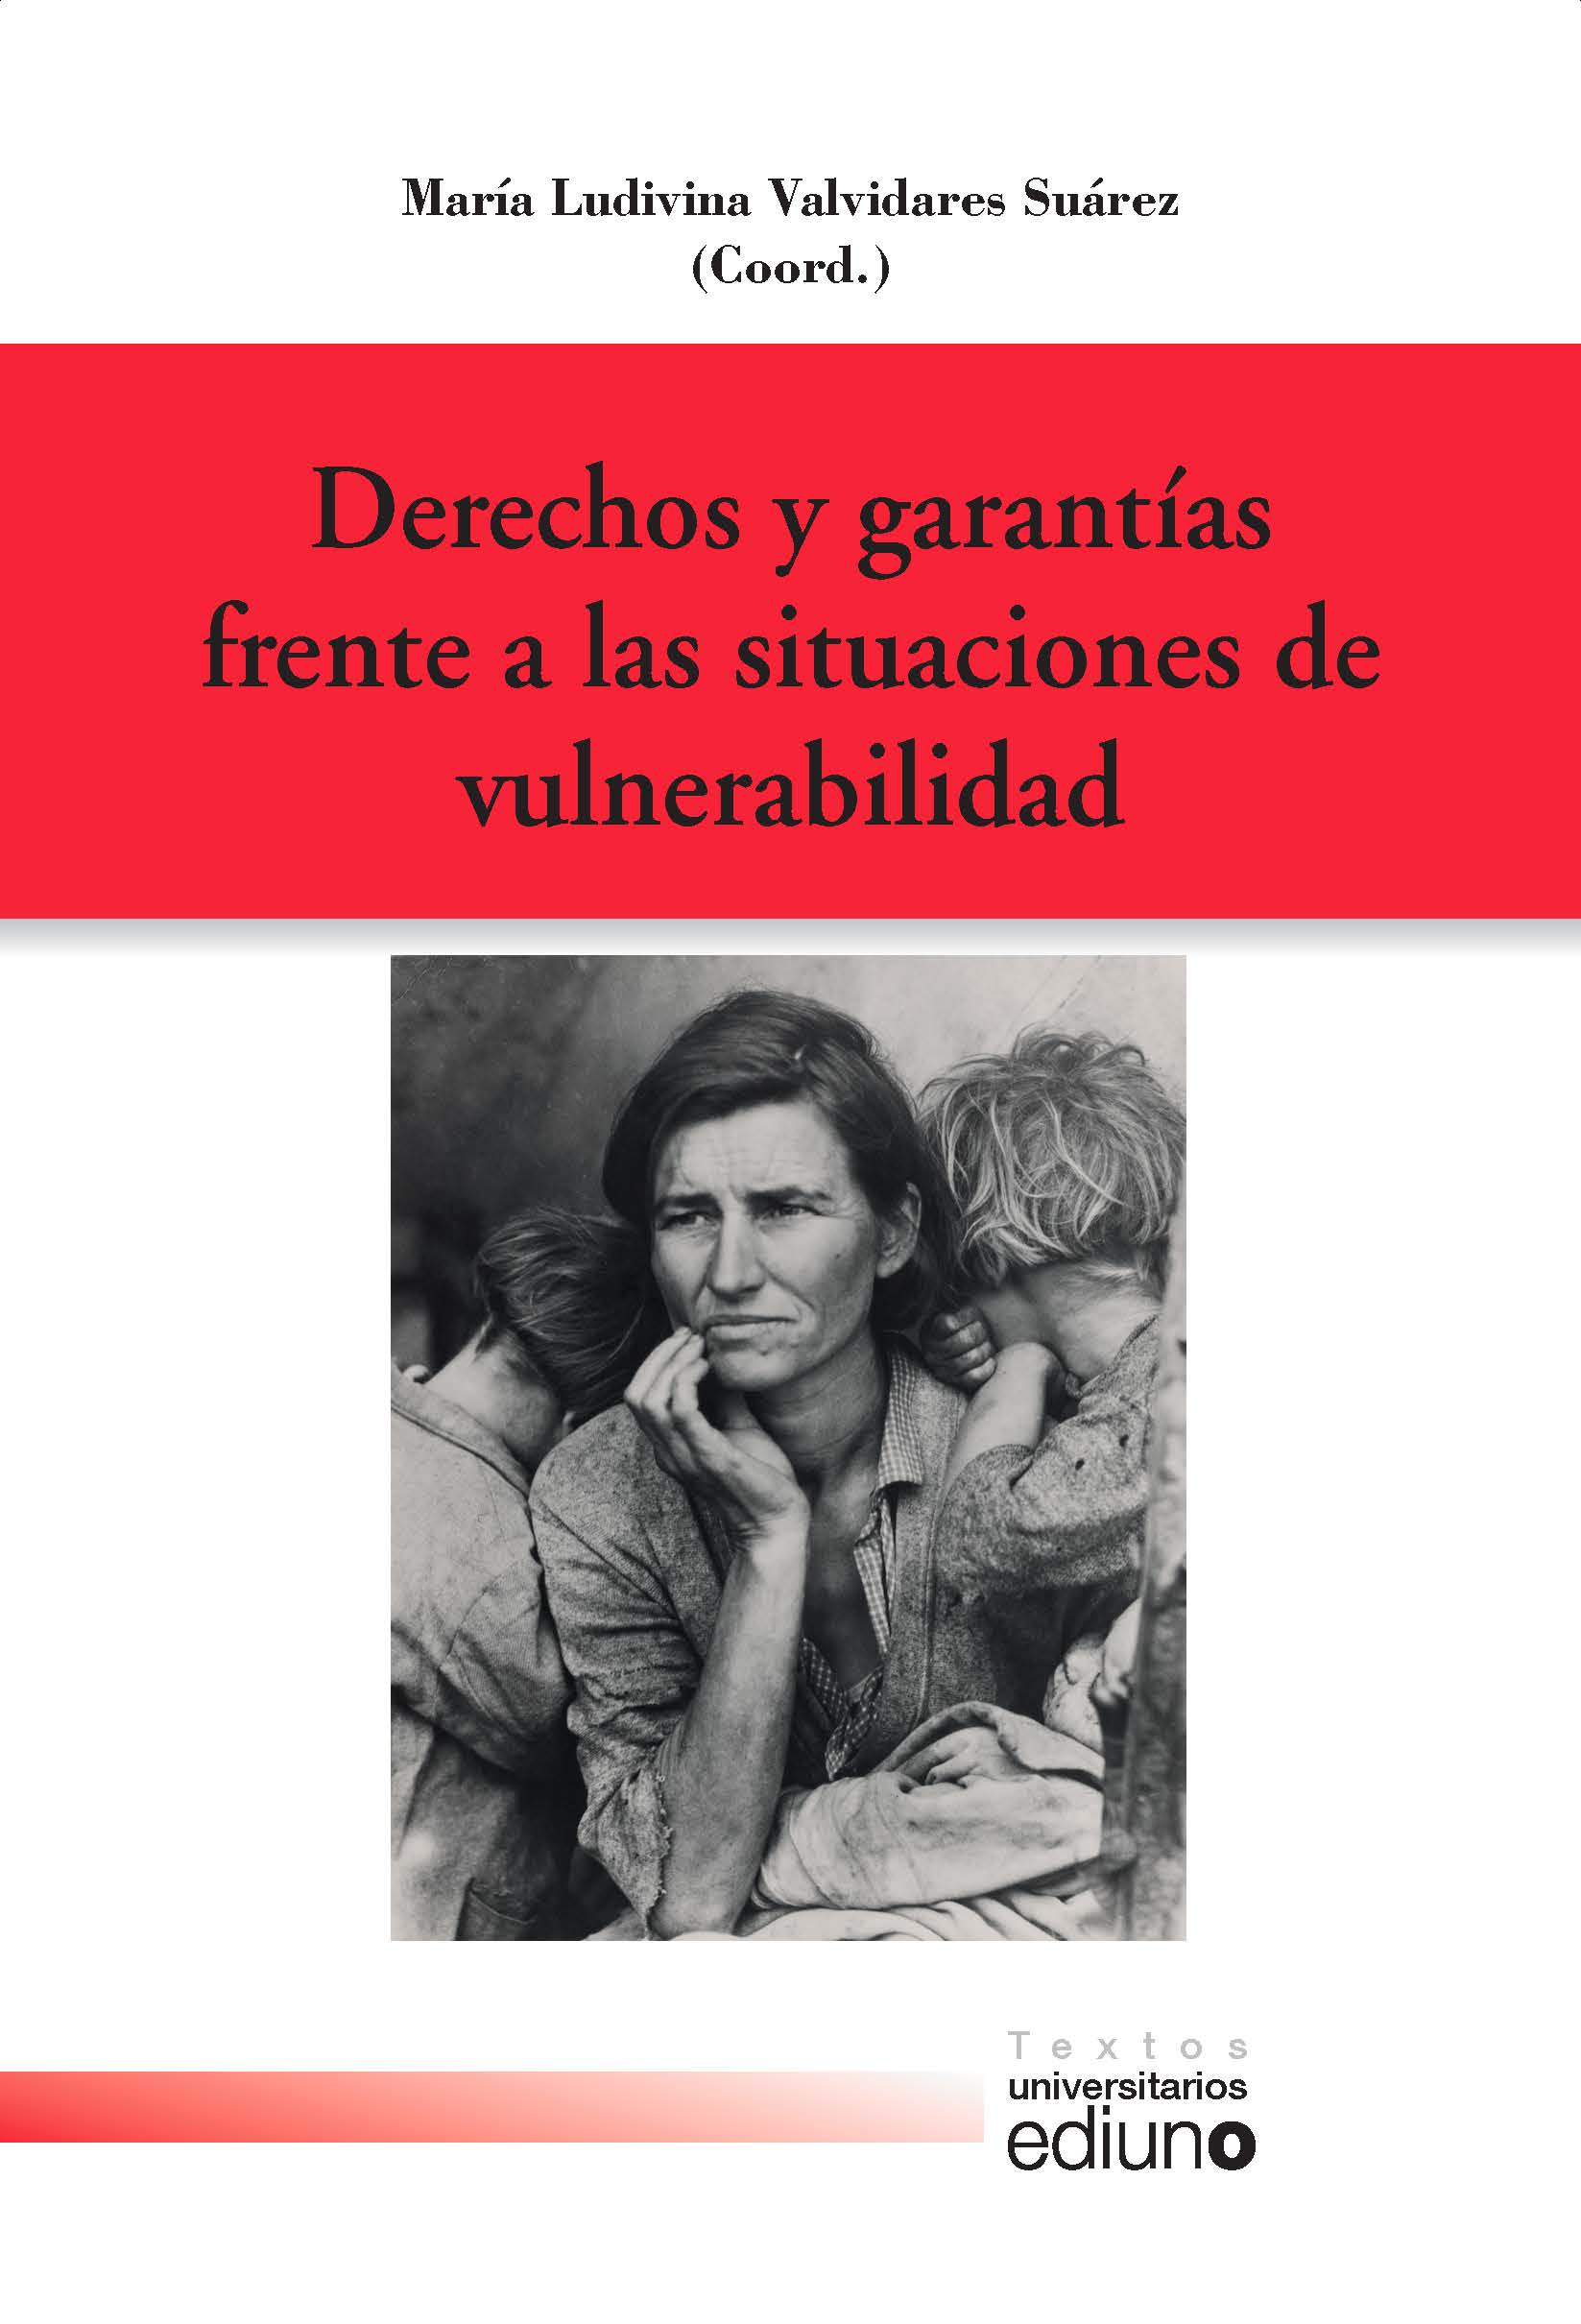 Imagen de portada del libro Derechos y garantías frente a las situaciones de vulnerabilidad